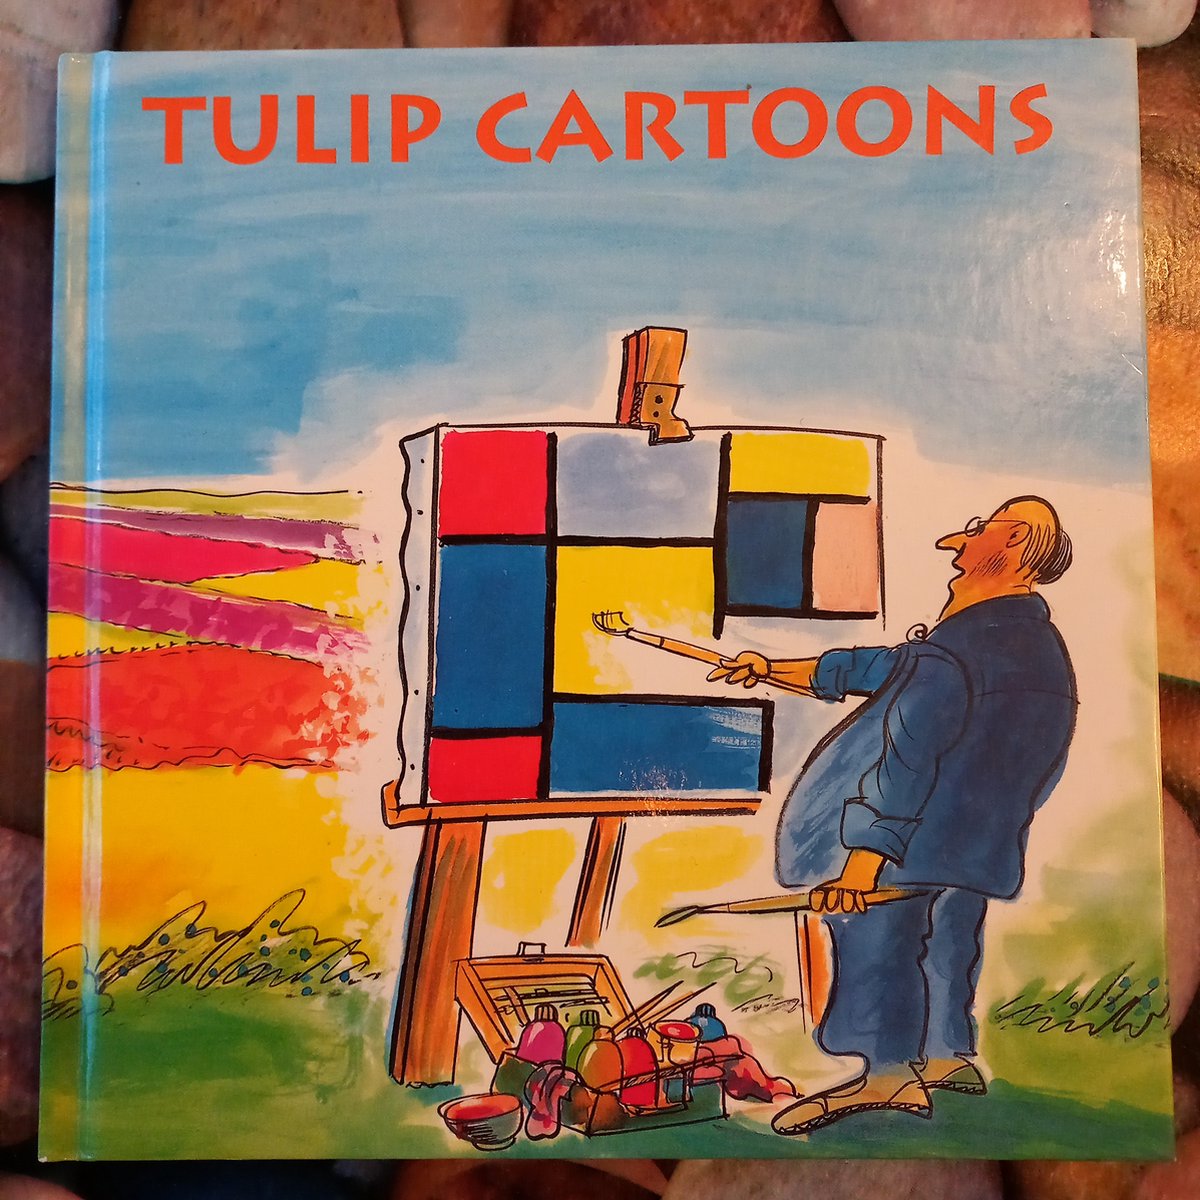 Tulip cartoons